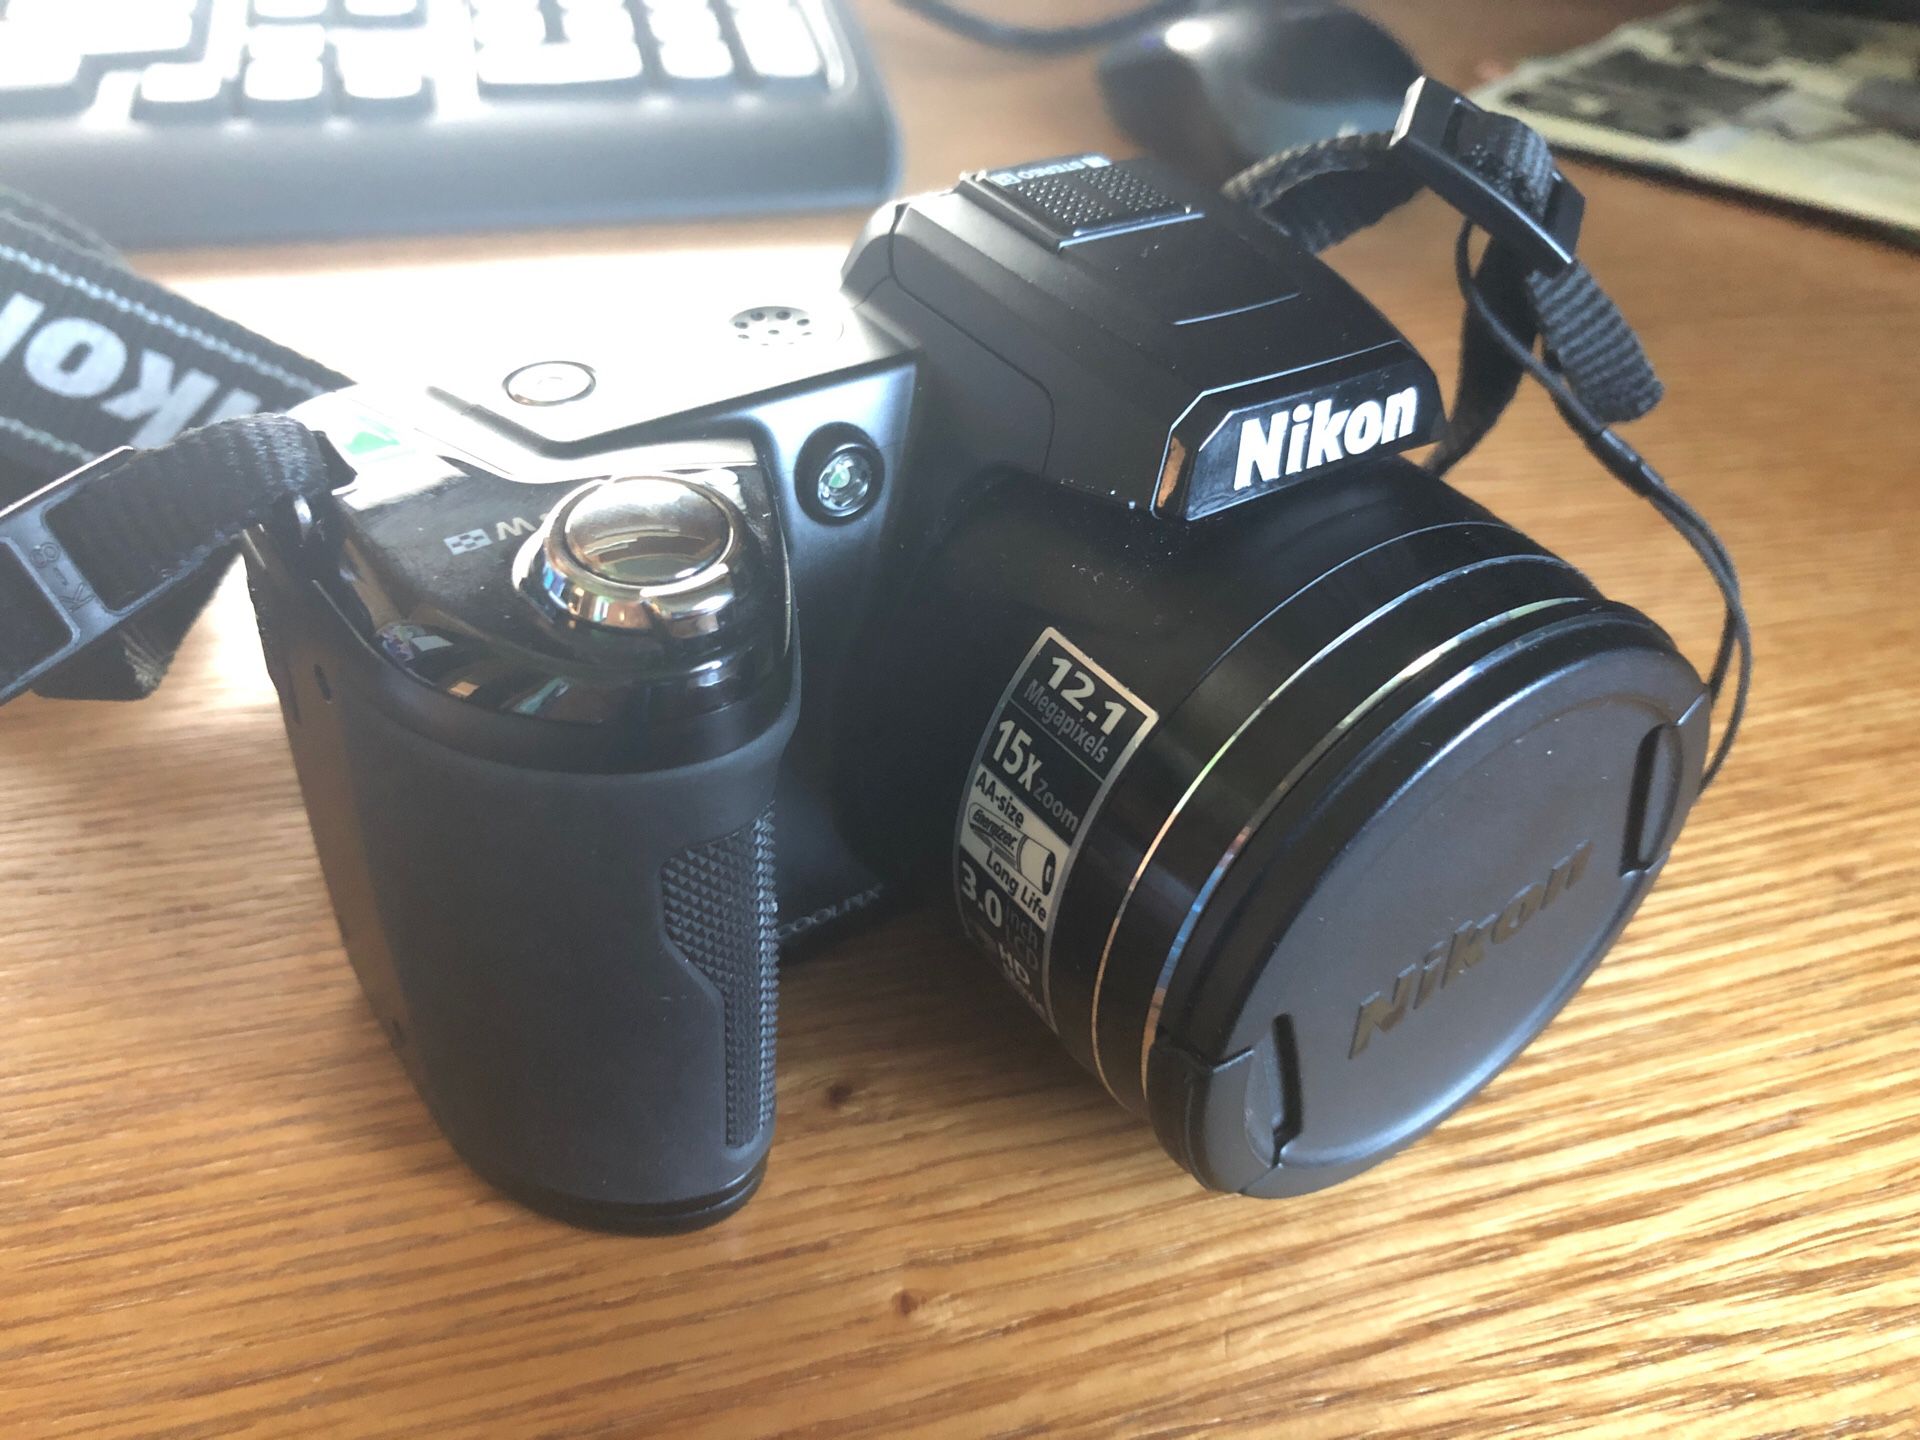 Nikon Coolpix L110 digital camera 12.1MP